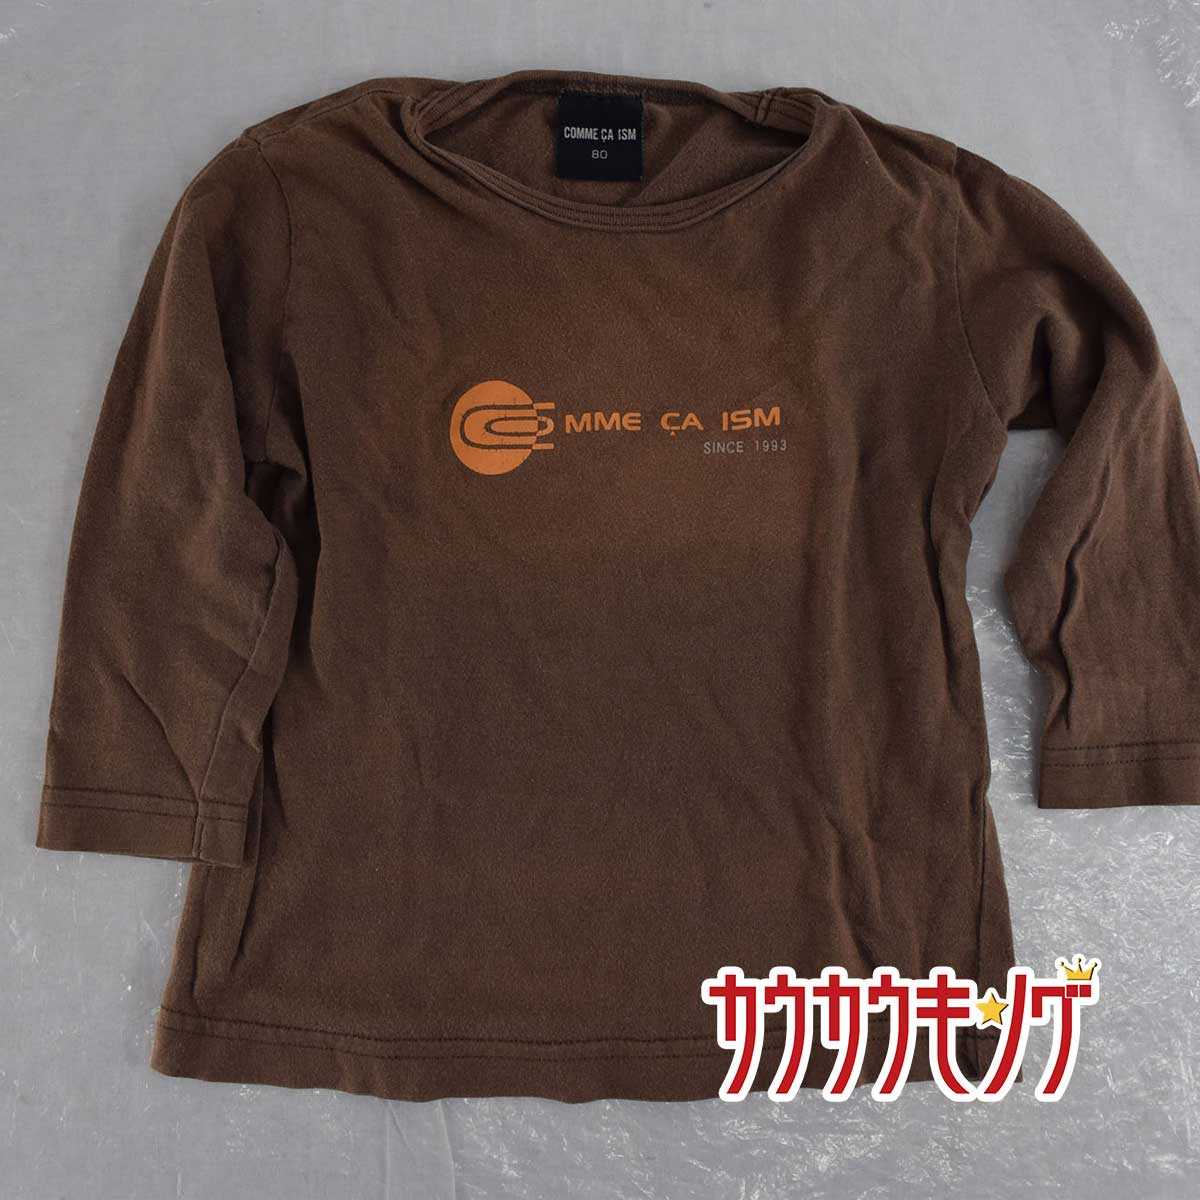 【中古】COMME CA ISM 長袖Tシャツ サイズ80 ブラウン コムサイズム